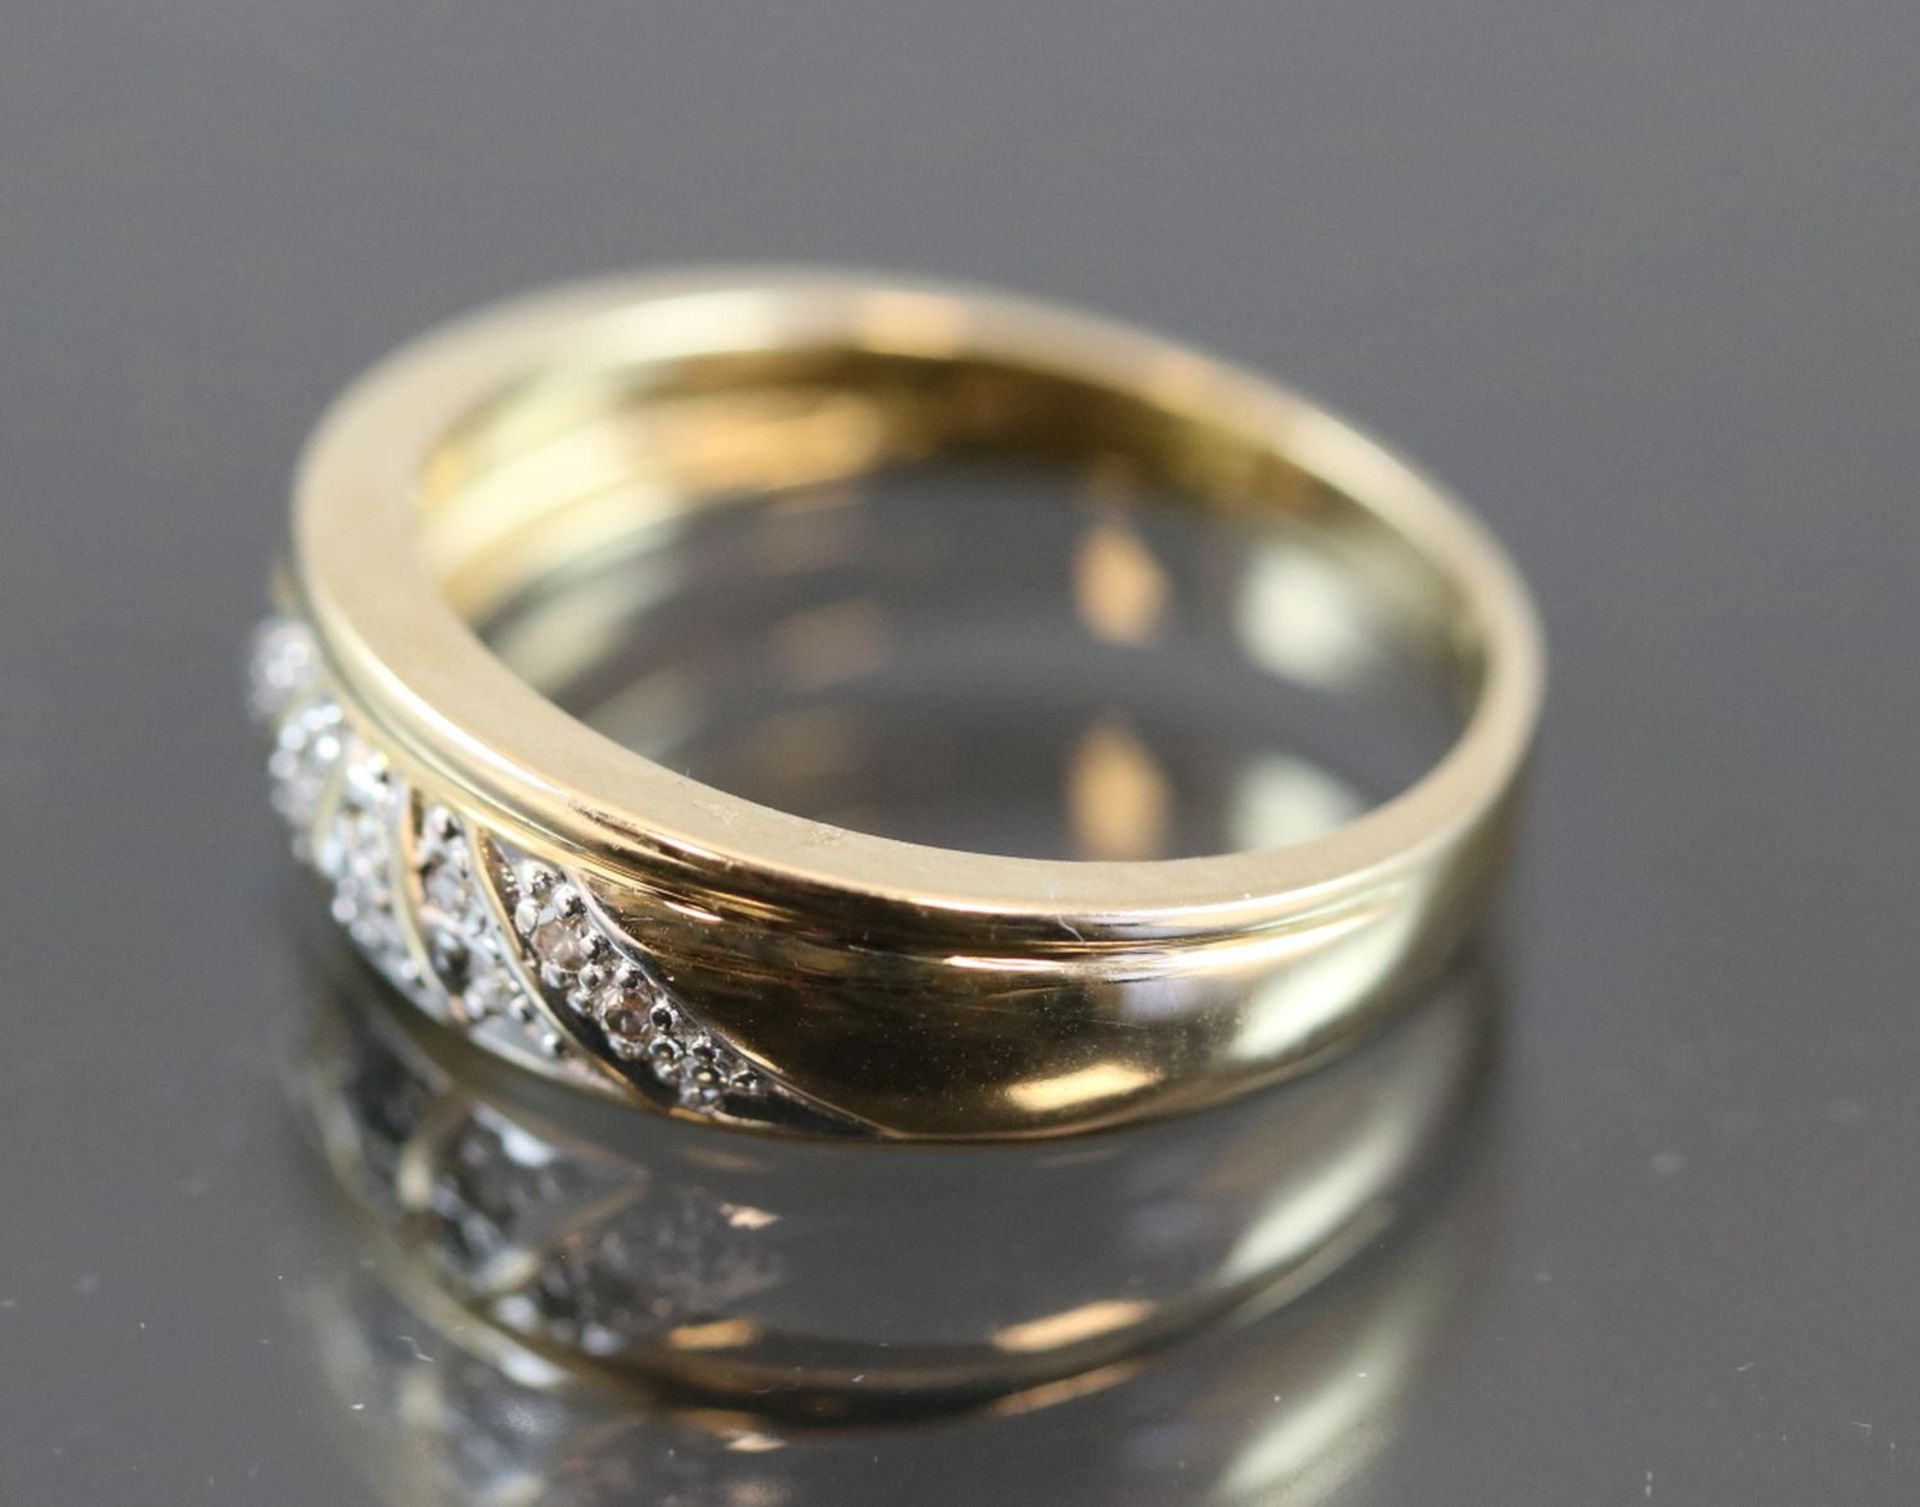 Diamant-Ring, 585 Gelbgold3,5 Gramm 10 Diamanten, 0,10 ct., w/si. Ringgröße: 54Schätzpreis: 400,- - Bild 3 aus 7